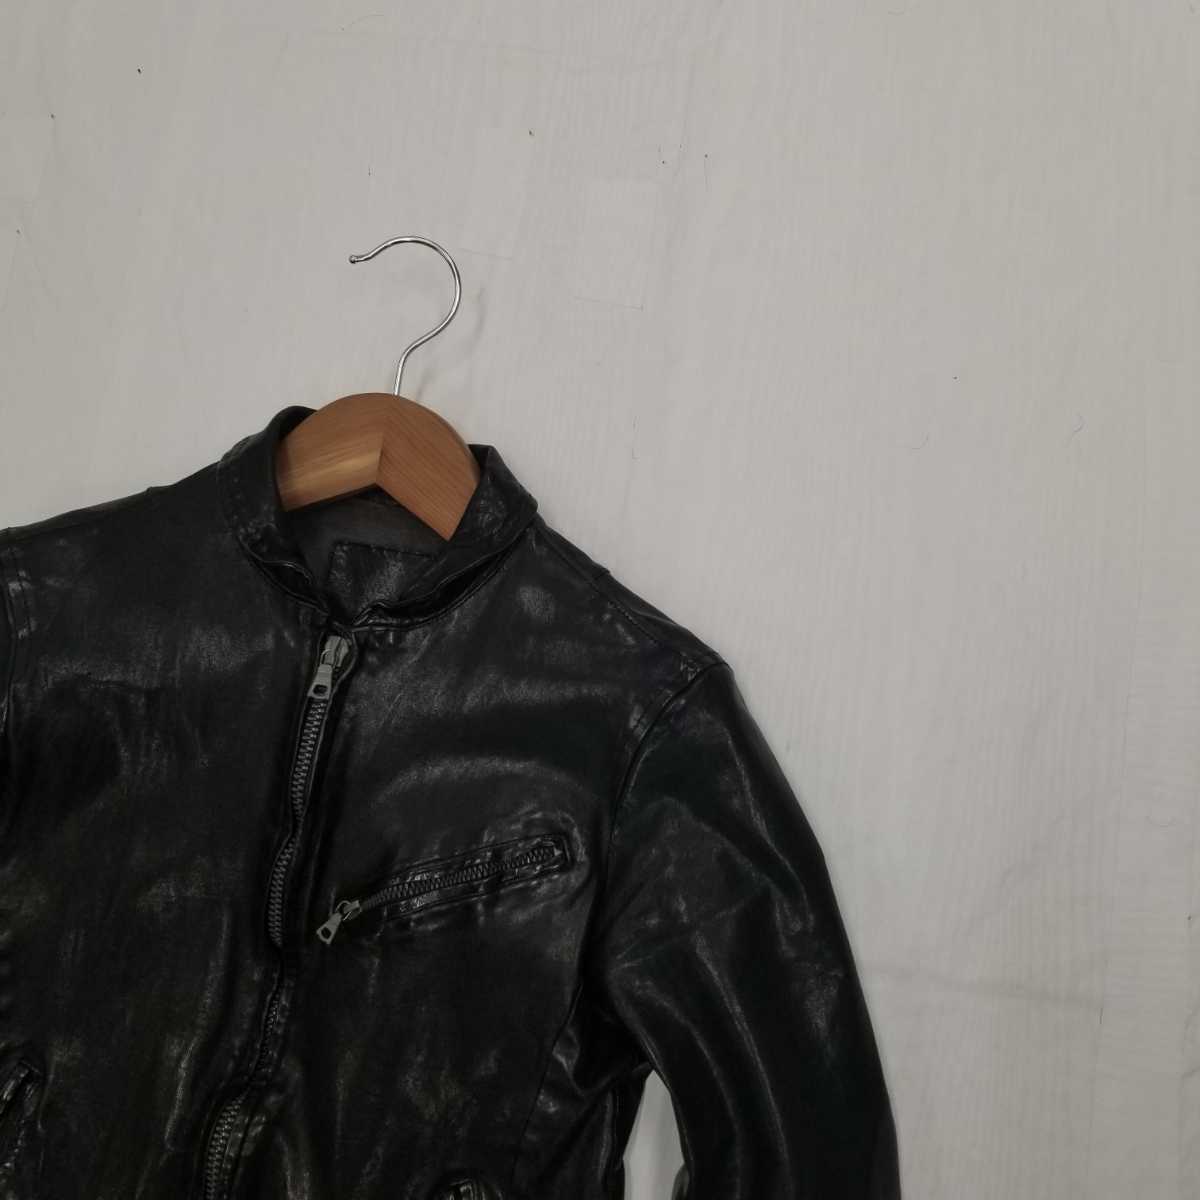 W ◆ 至高の1品 漢のブランド服 バックラッシュ ISAMU KATAYAMA BACKLASH イタリアンホースレザー 製品染 シングルライダース ジャケット M_画像3